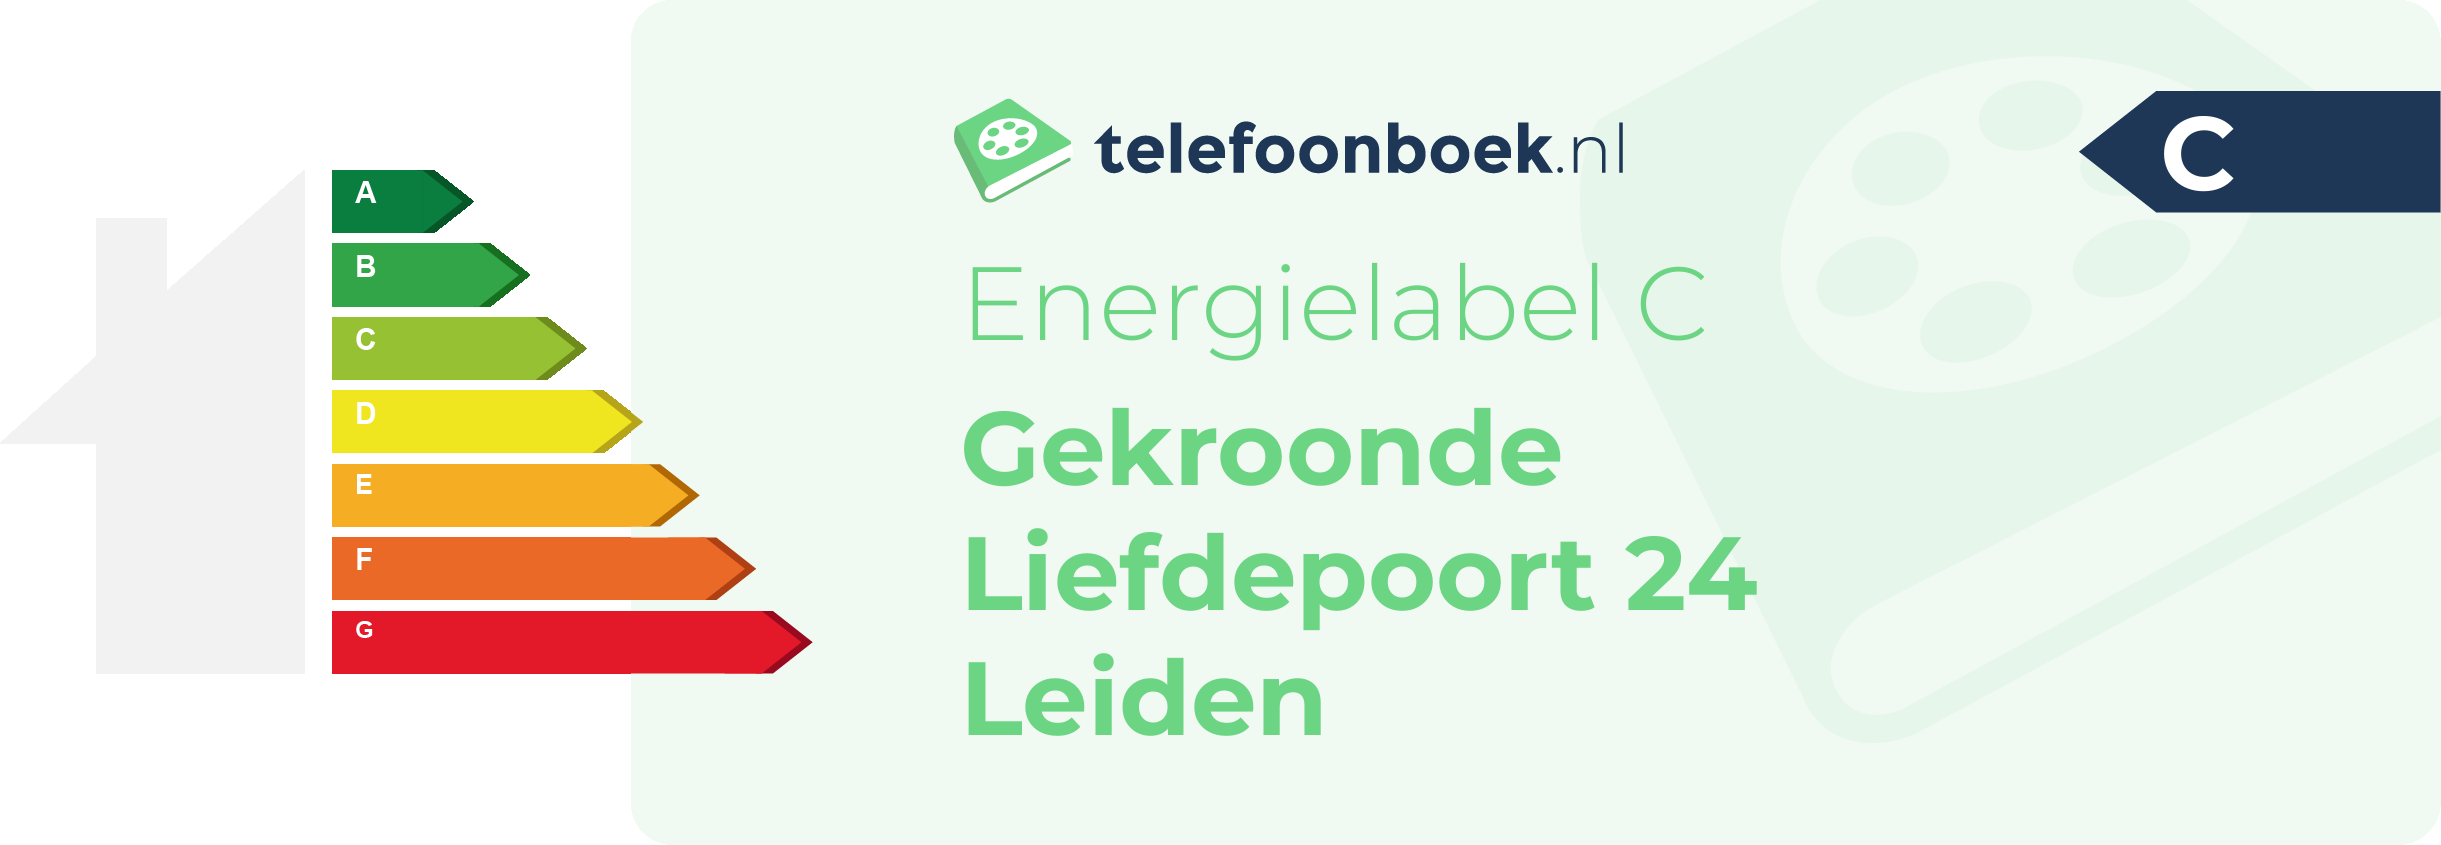 Energielabel Gekroonde Liefdepoort 24 Leiden